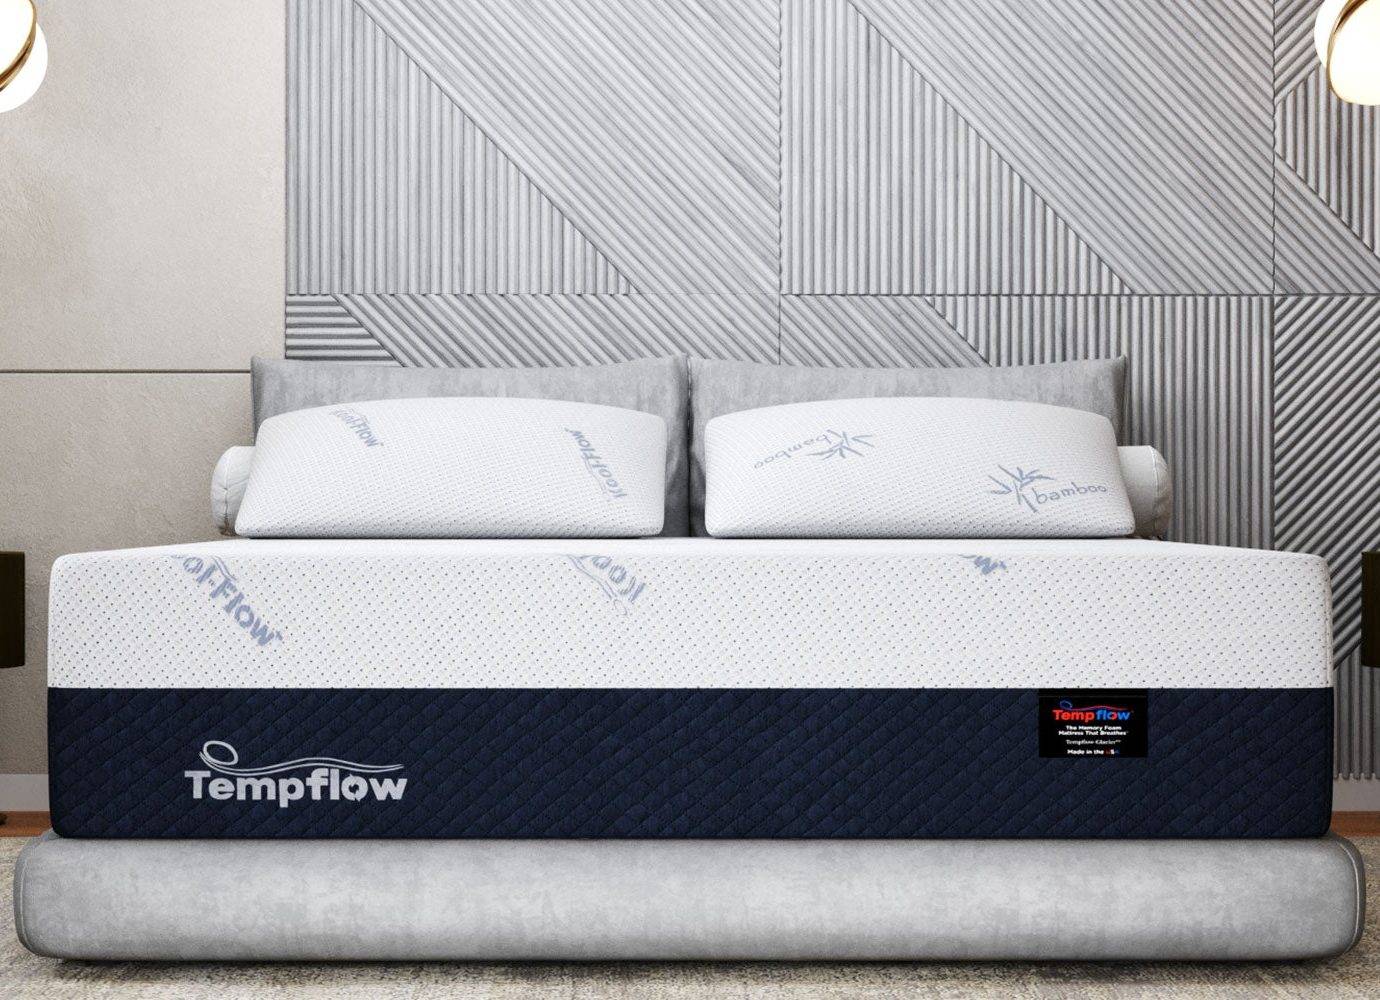 tempflow memory foam mattress reviews